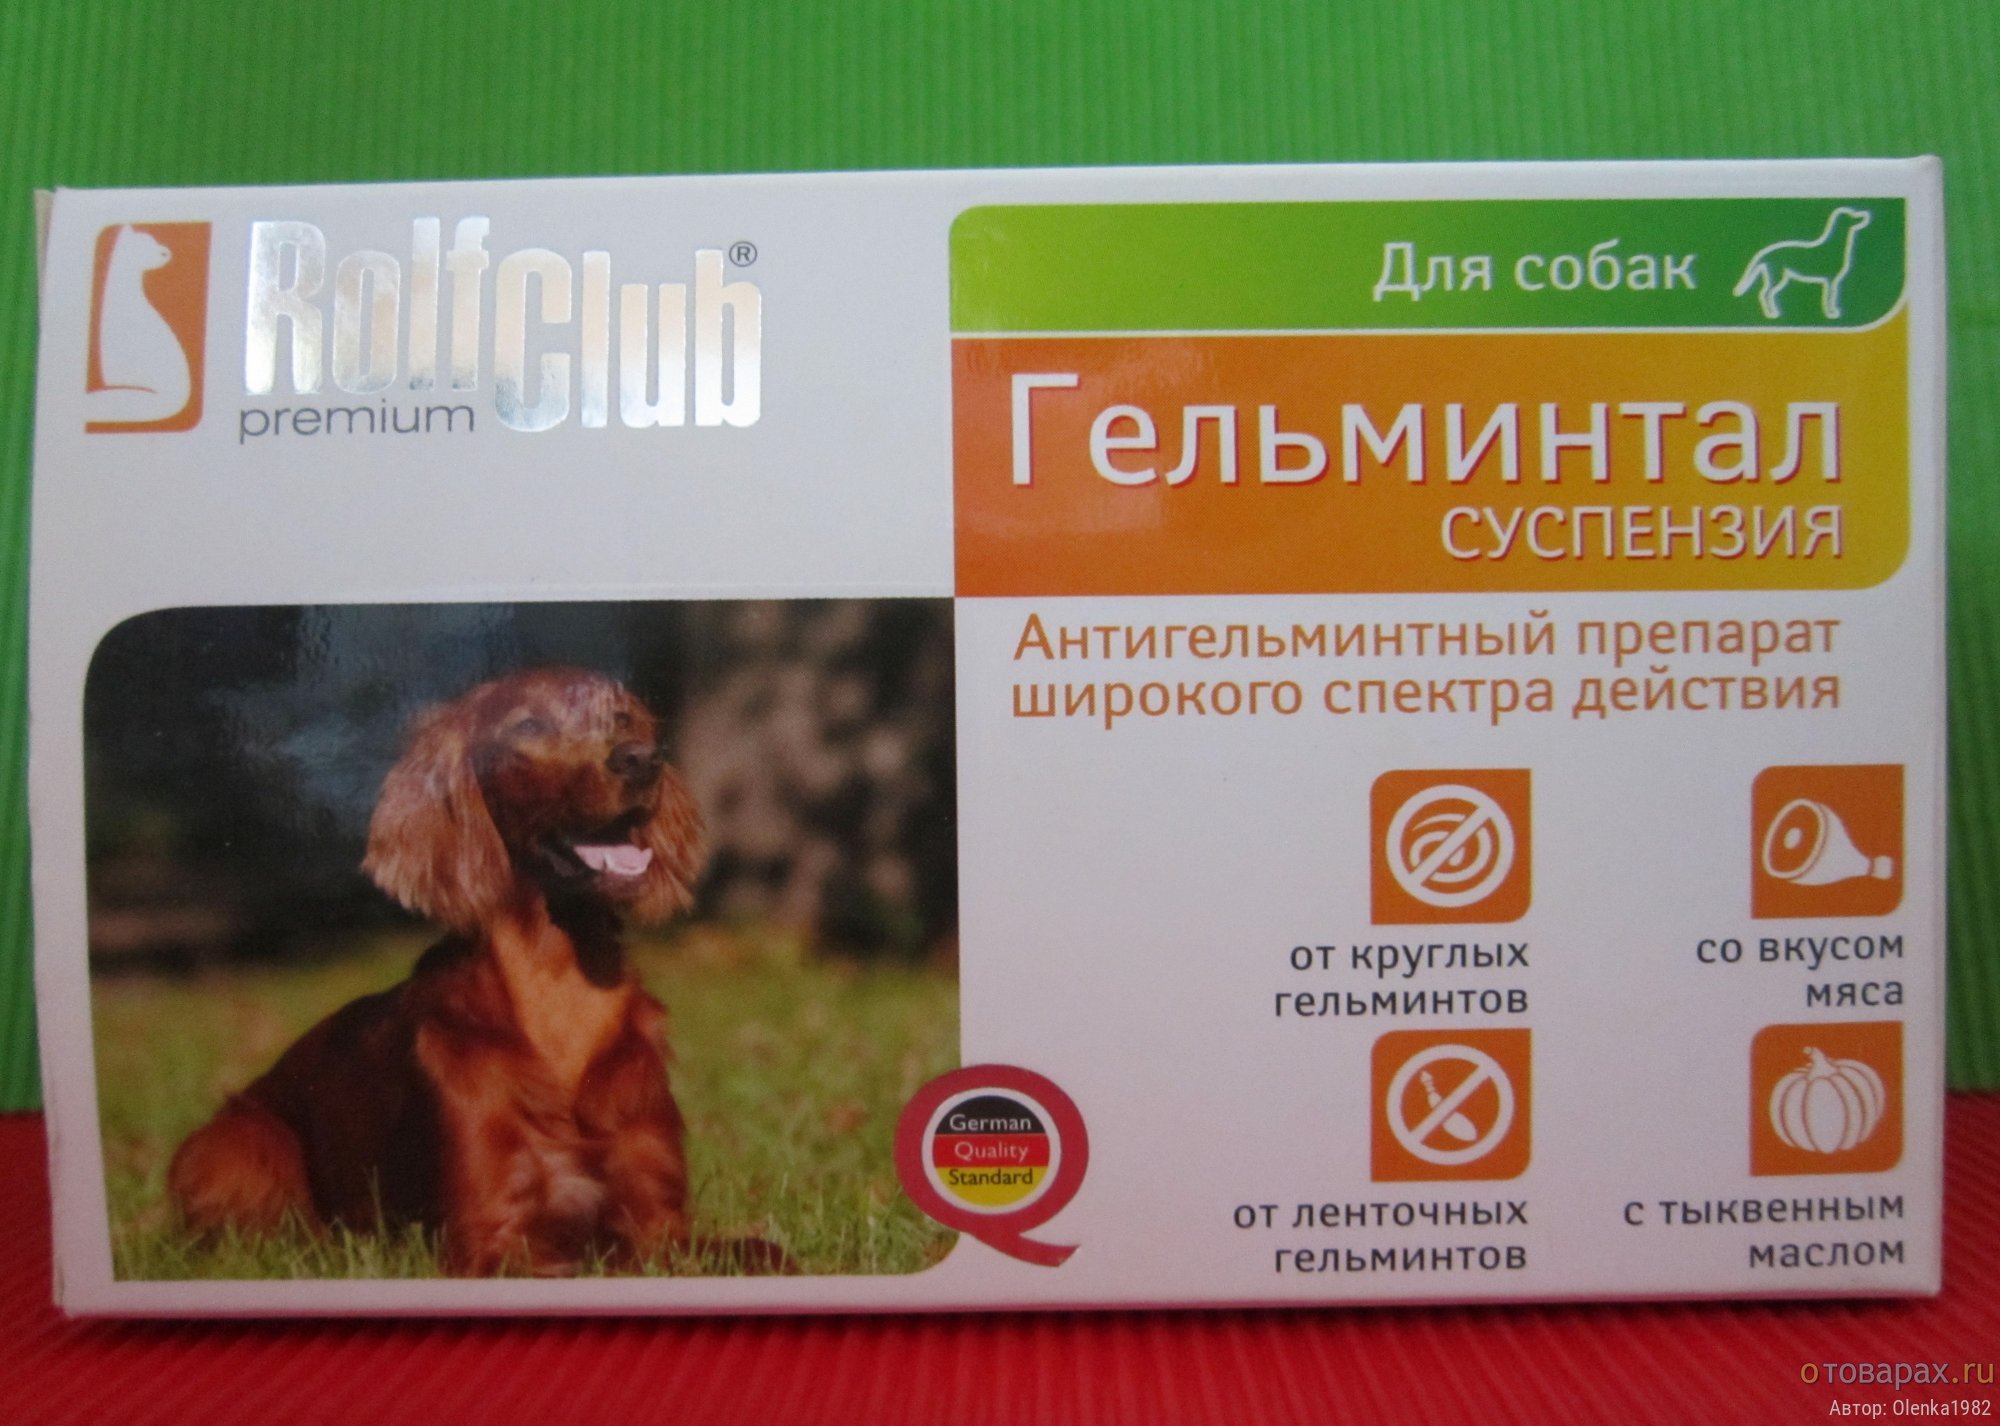 Противоглистные препараты для собак: отзывы, цена